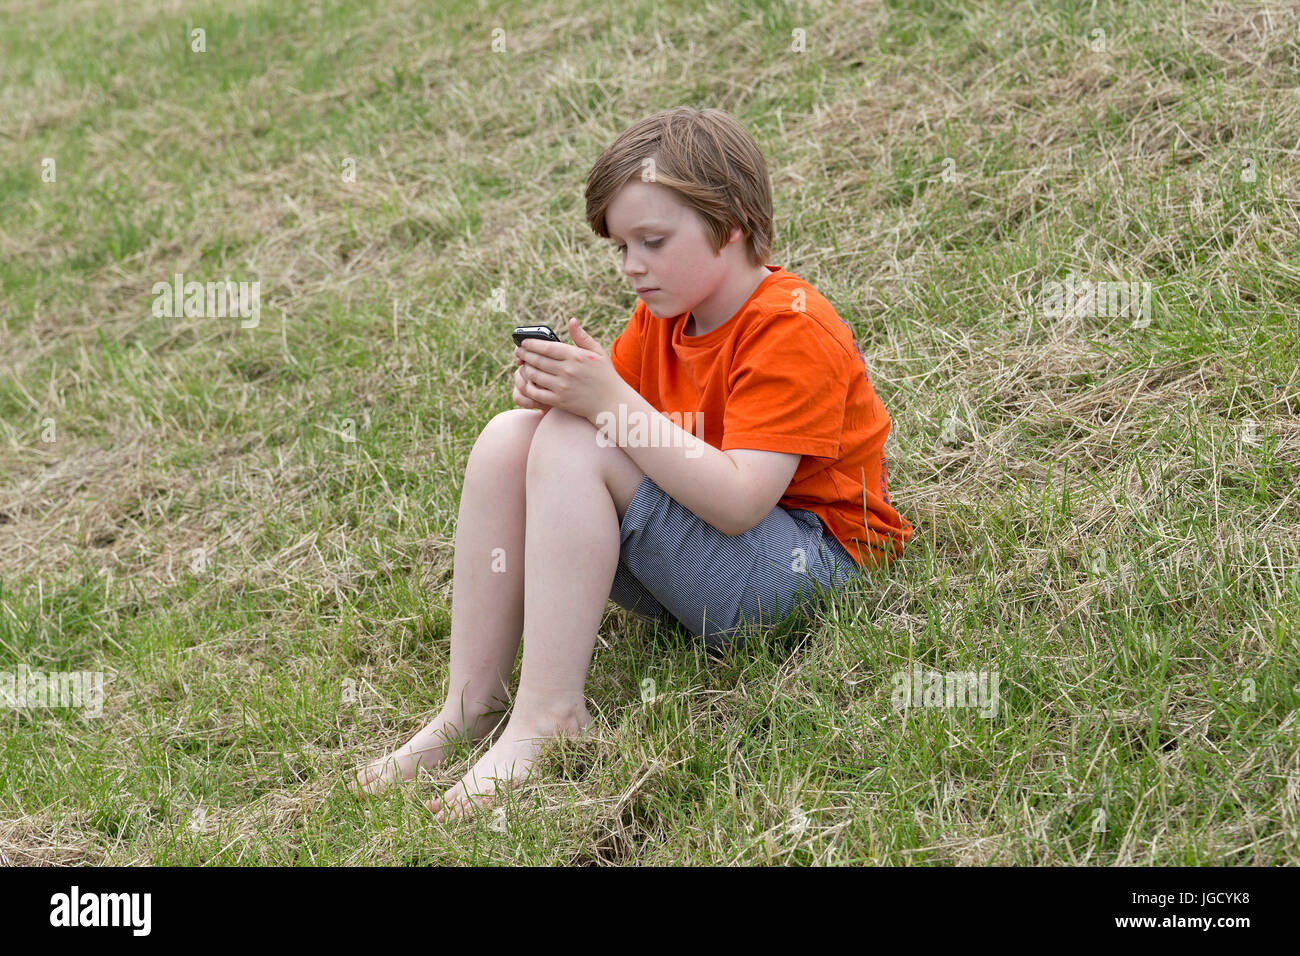 Jeune garçon jouant avec son téléphone portable Banque D'Images